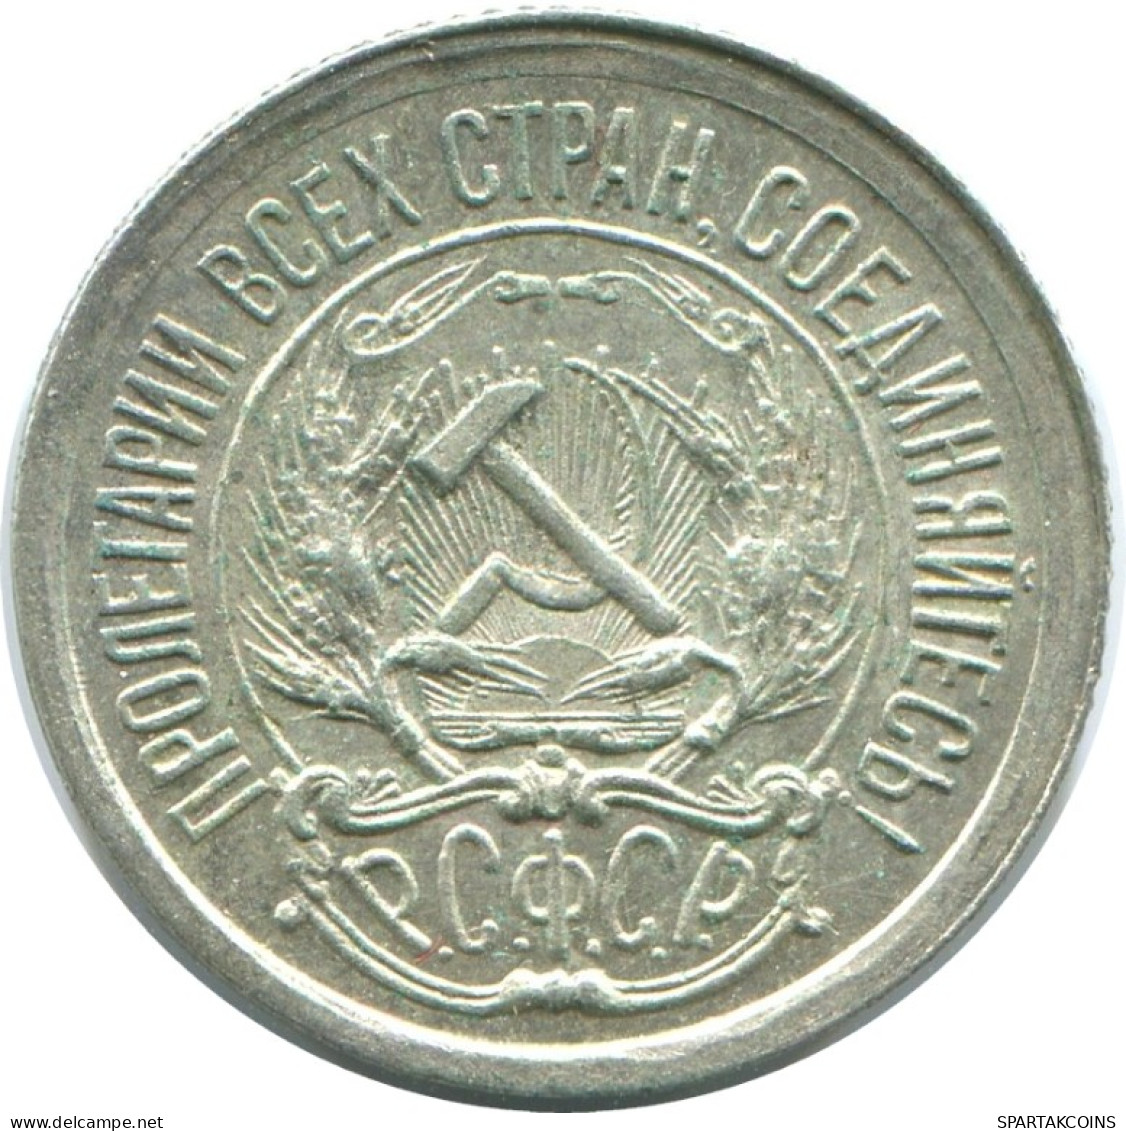 10 KOPEKS 1923 RUSSLAND RUSSIA RSFSR SILBER Münze HIGH GRADE #AE906.4.D.A - Rusland